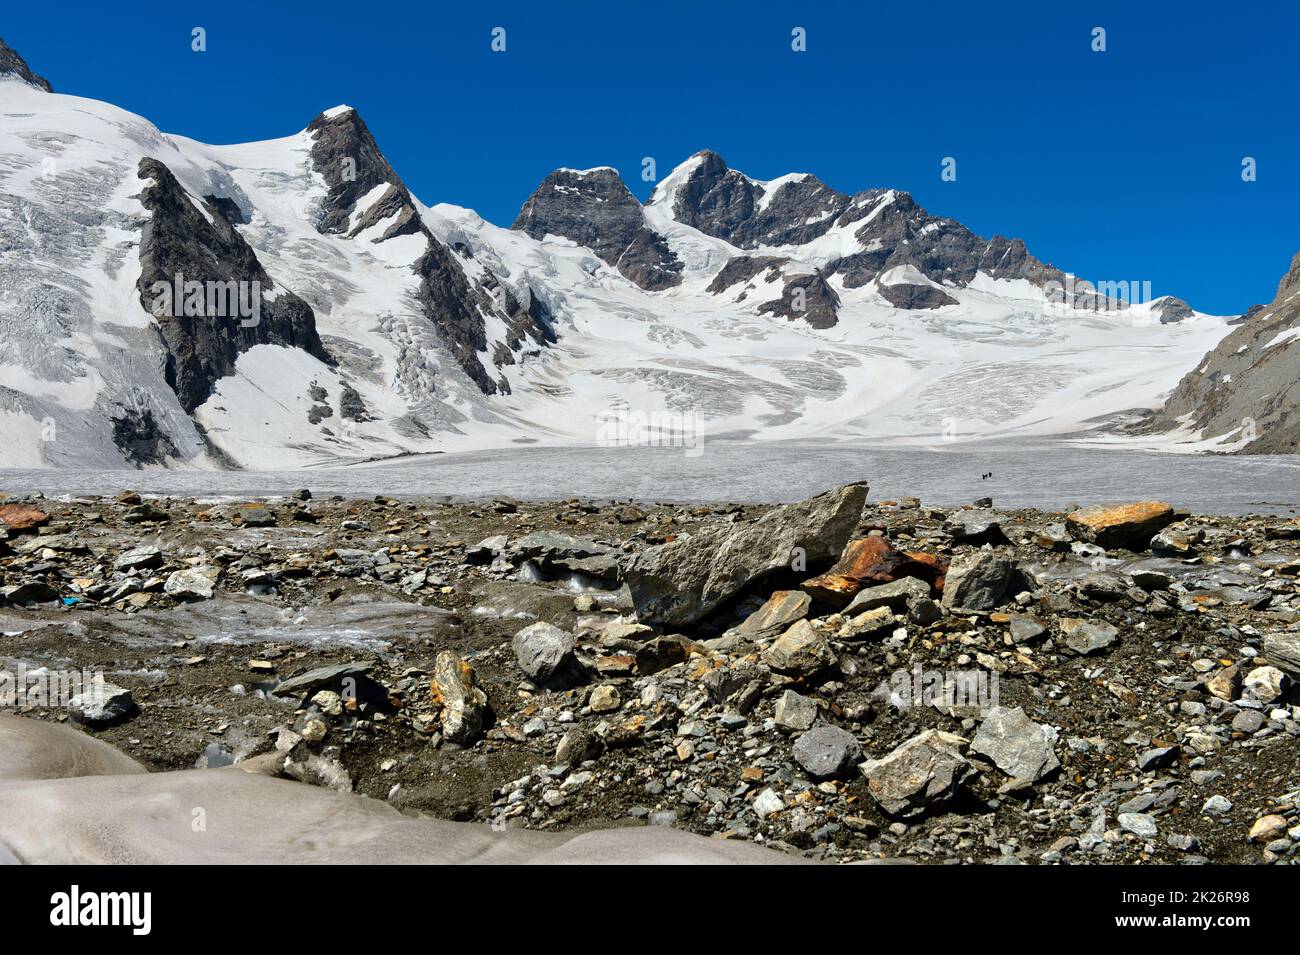 Vue de Konkordiaplatz sur le glacier Jungfraufirn jusqu'au massif de la Jungfrau, classé au patrimoine mondial de l'UNESCO Alpes suisses Jungfrau-Aletsch, Grindelwald, Bernese Banque D'Images